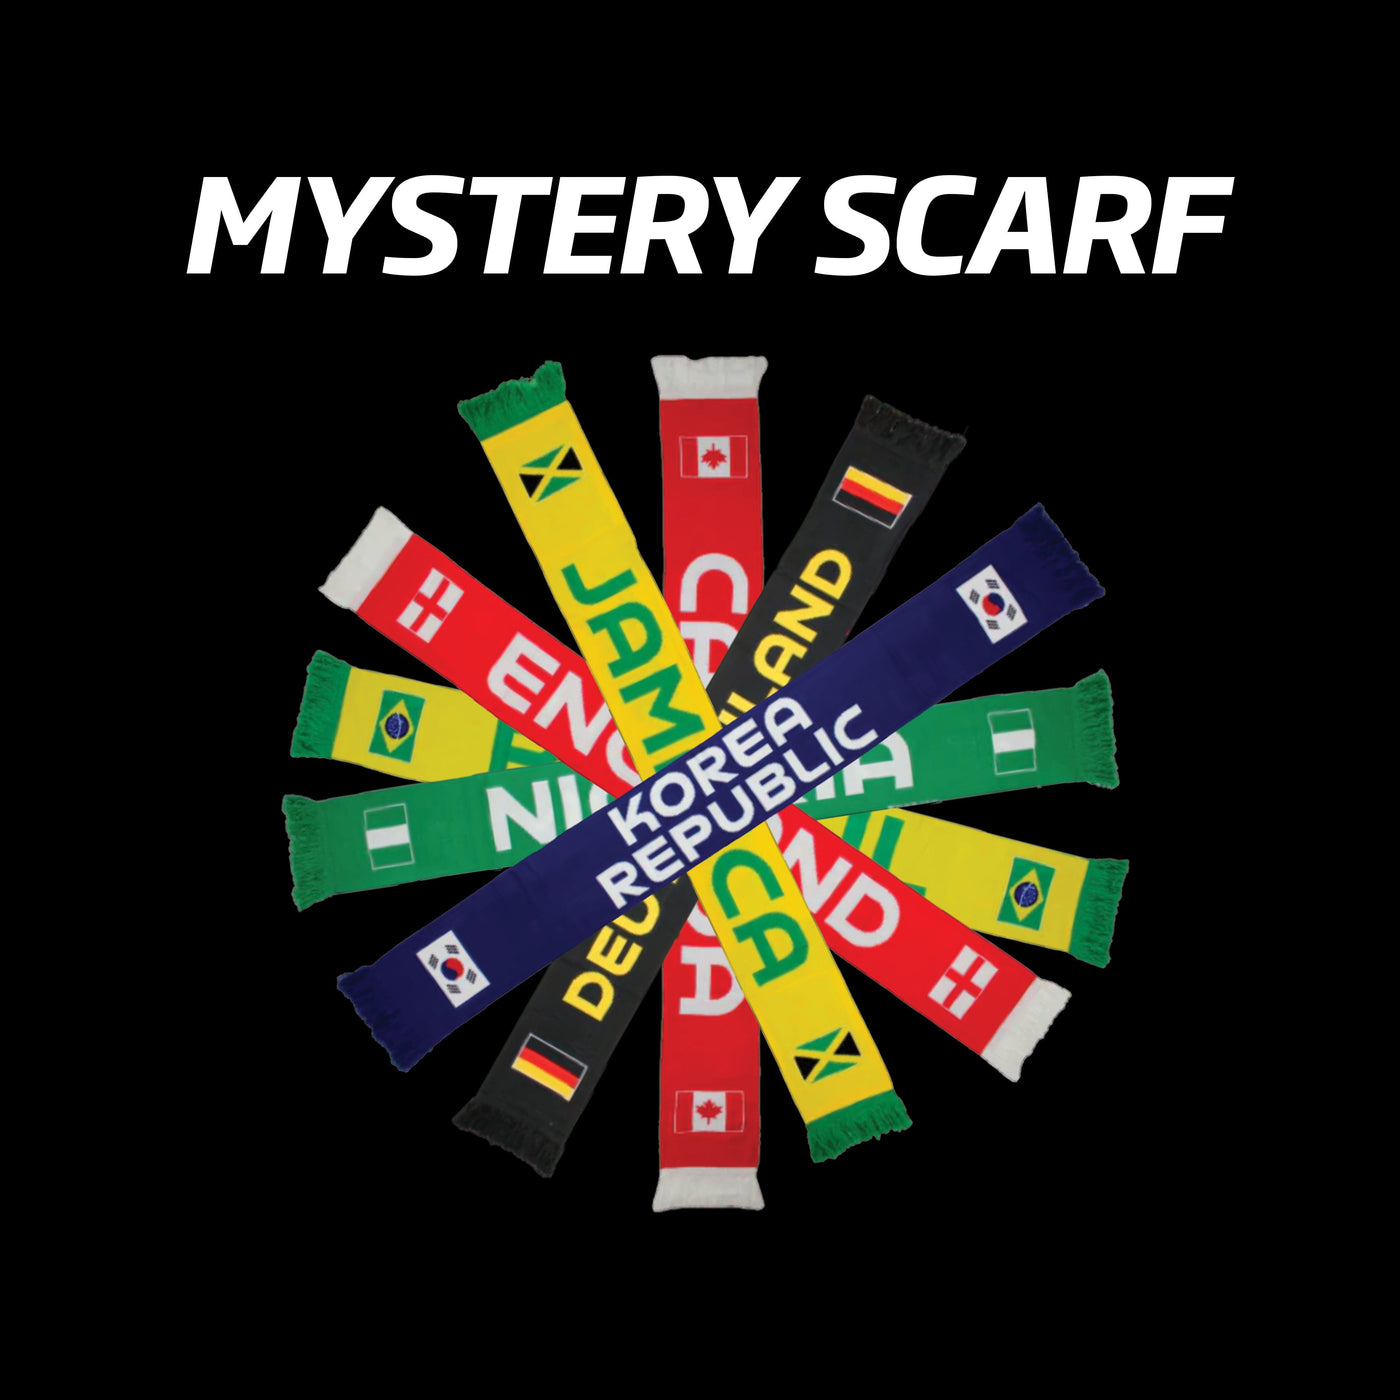 Sekem FIFA WWC23 Element Scarf - Mystery Choice